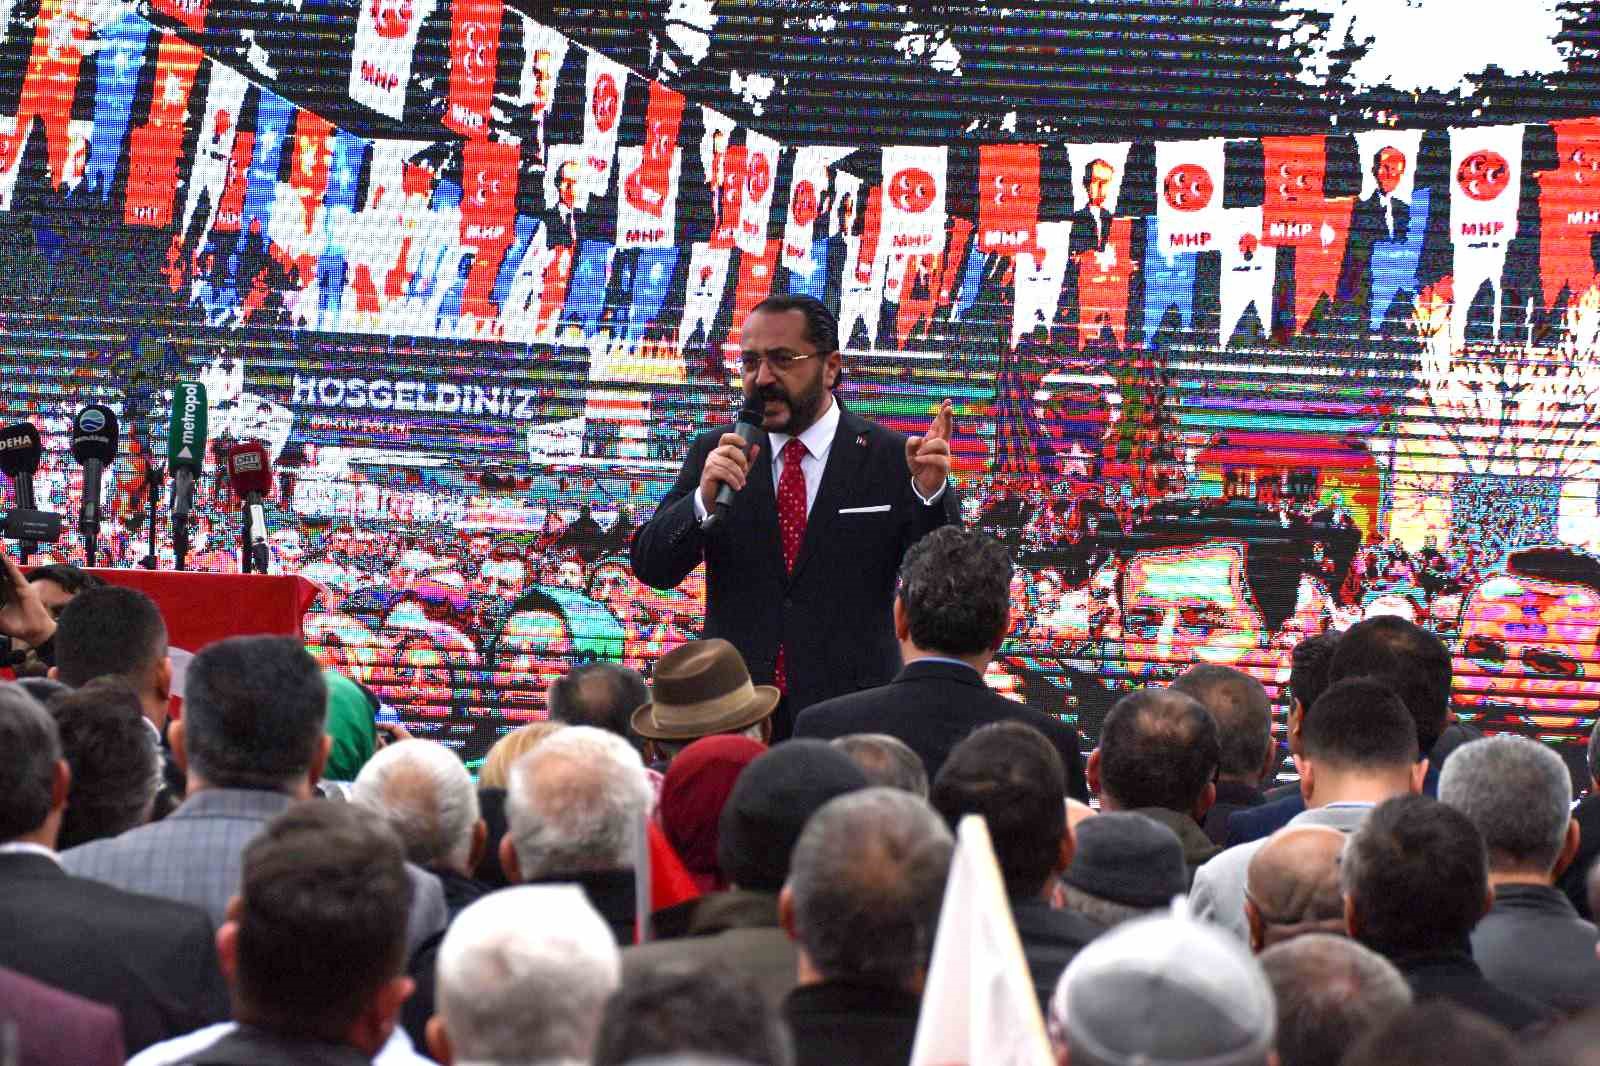 MHP İl Başkanı Yılmaz: “Türk milliyetçilerinin sandıktaki adresi bellidir”